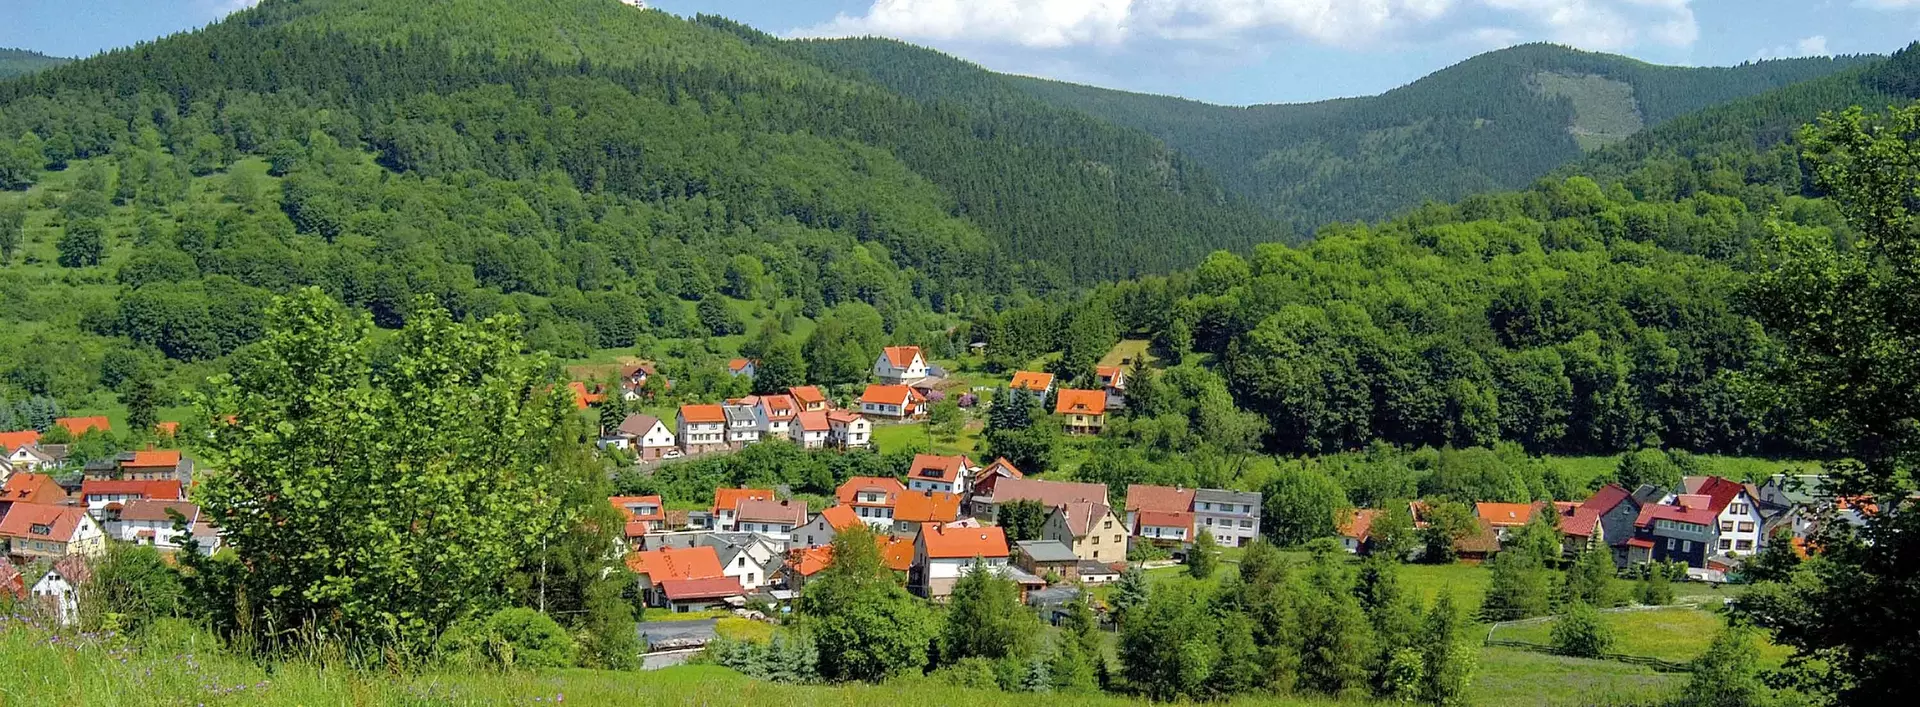 Im Thüringer Wald gibt es herrliche Panoramaussichten in die Täler der Kammlagen zu genießen.